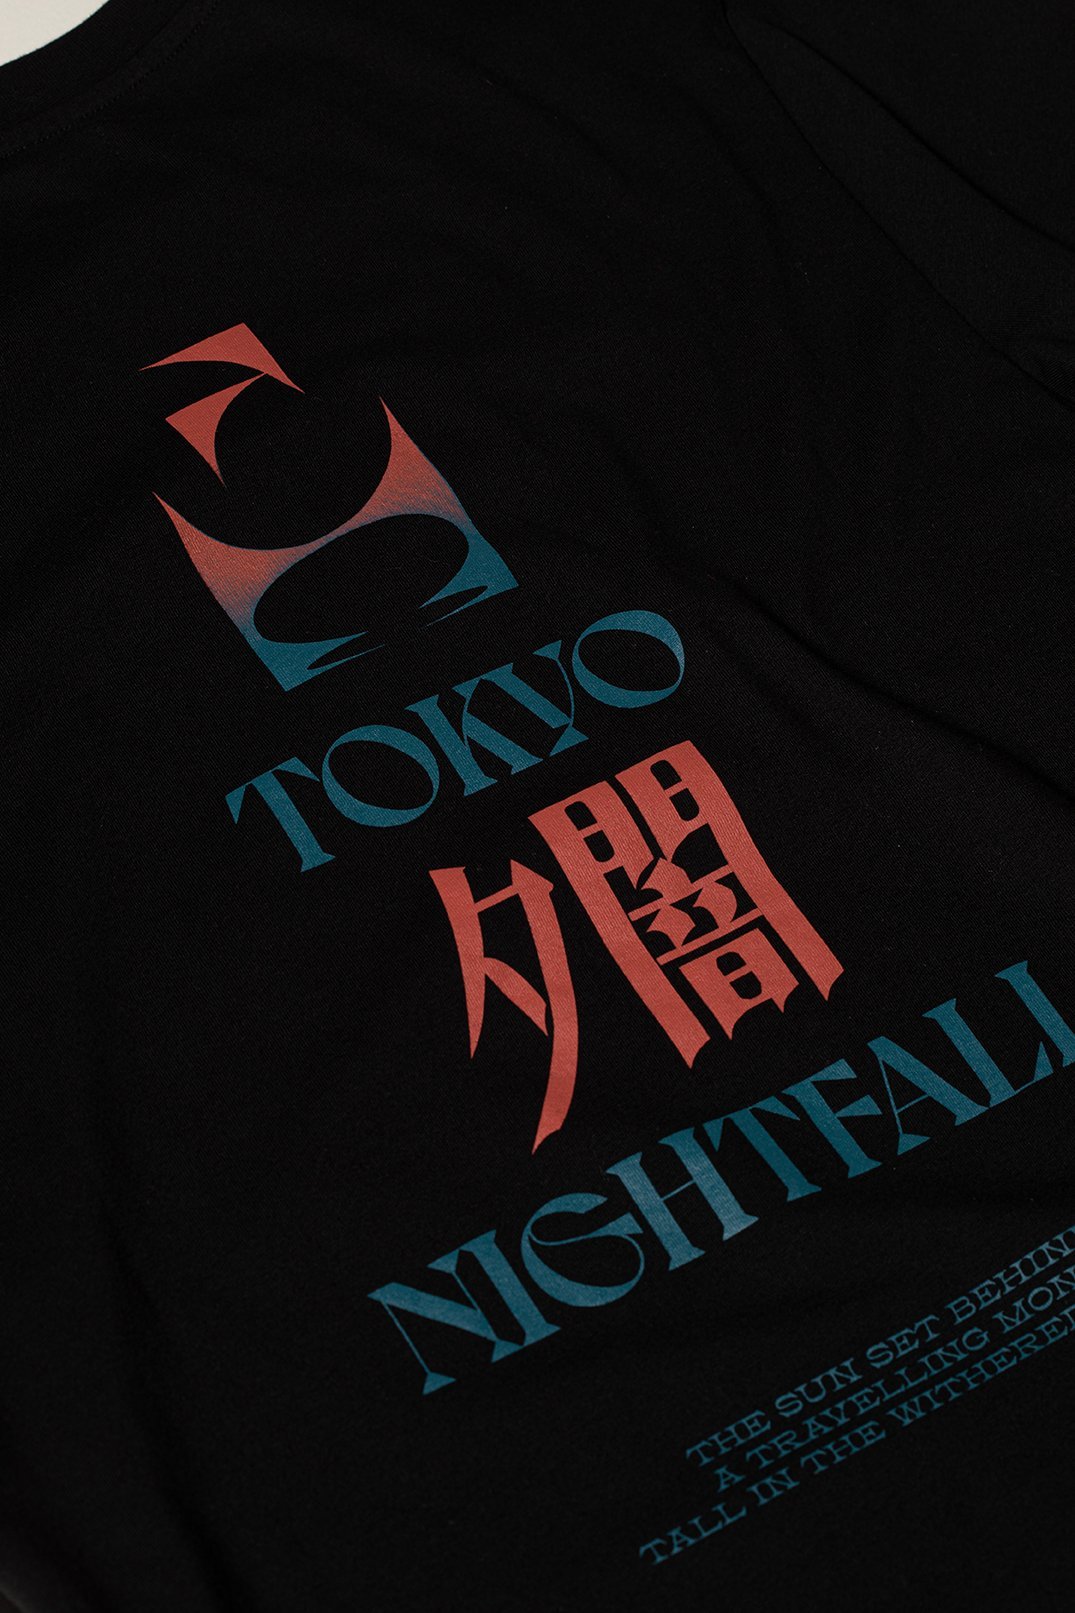 Edwin Tokyo Nightfall T-Shirt